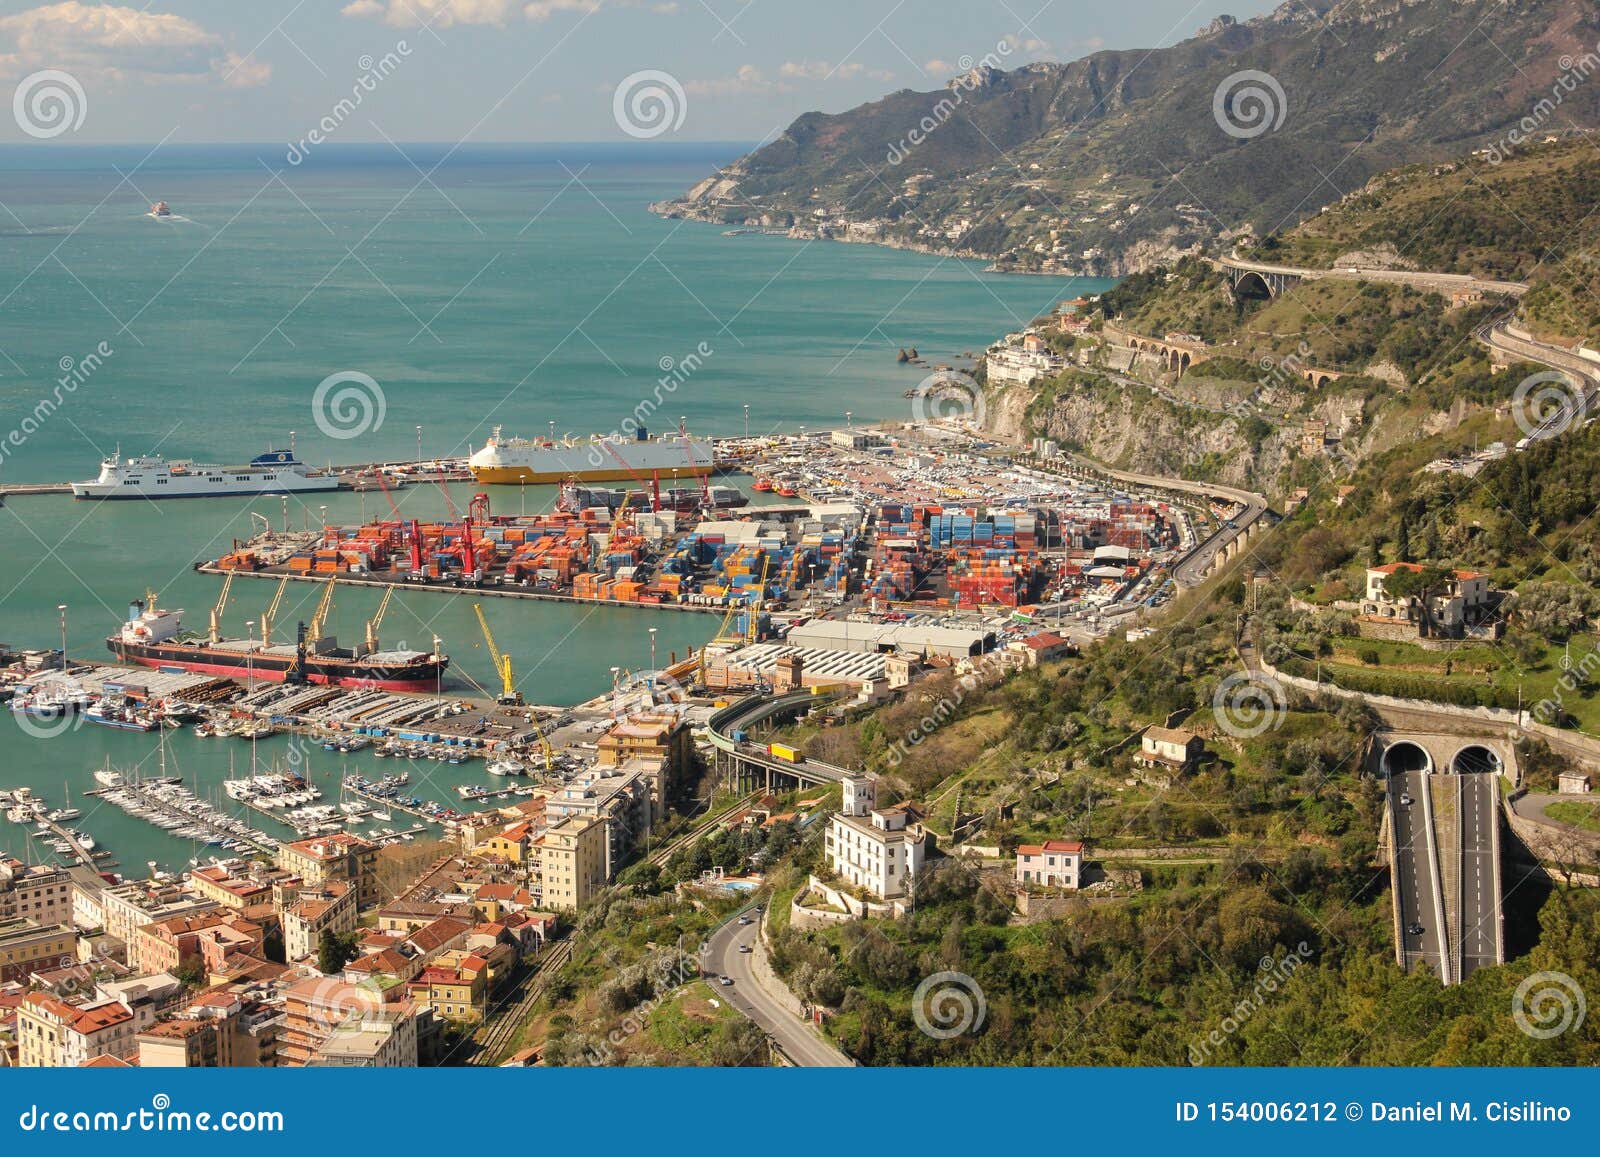 port from castello di arechi. salerno. italy